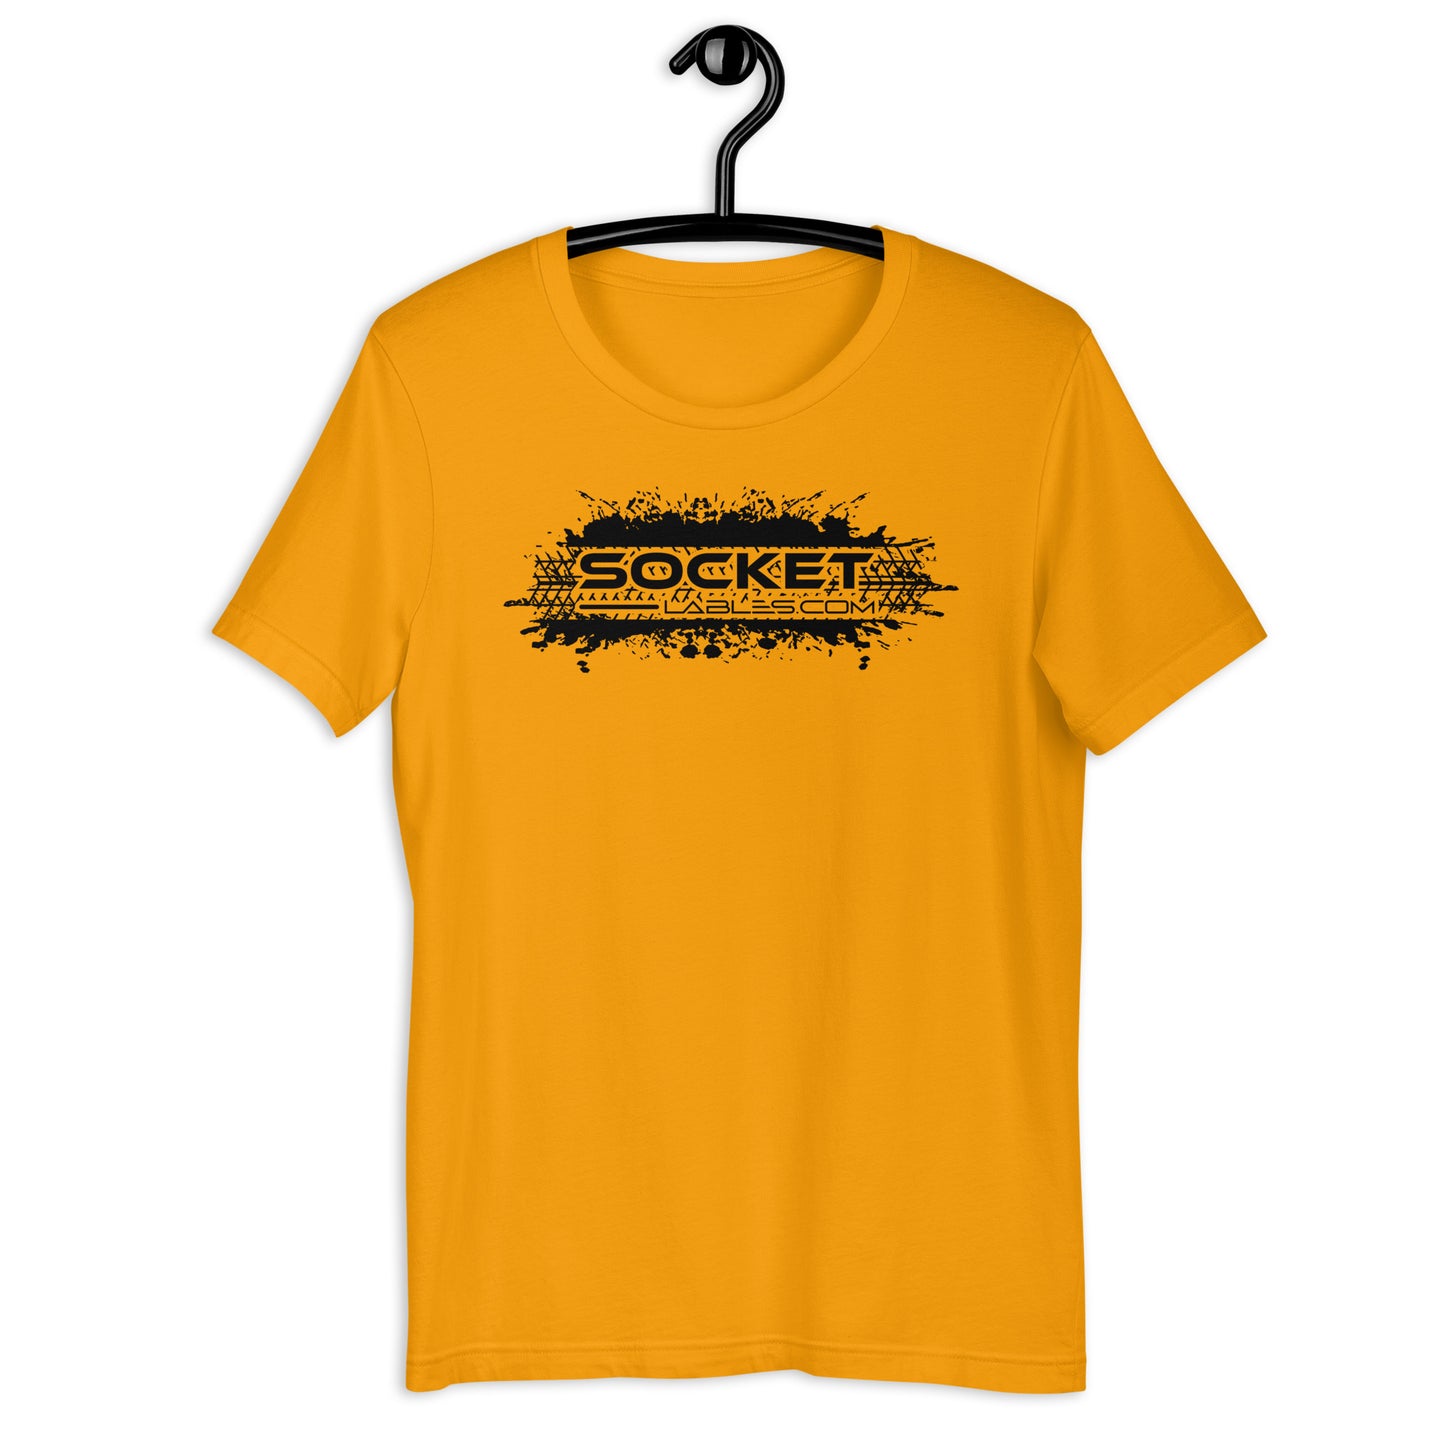 Socket Labels.com  t-shirt